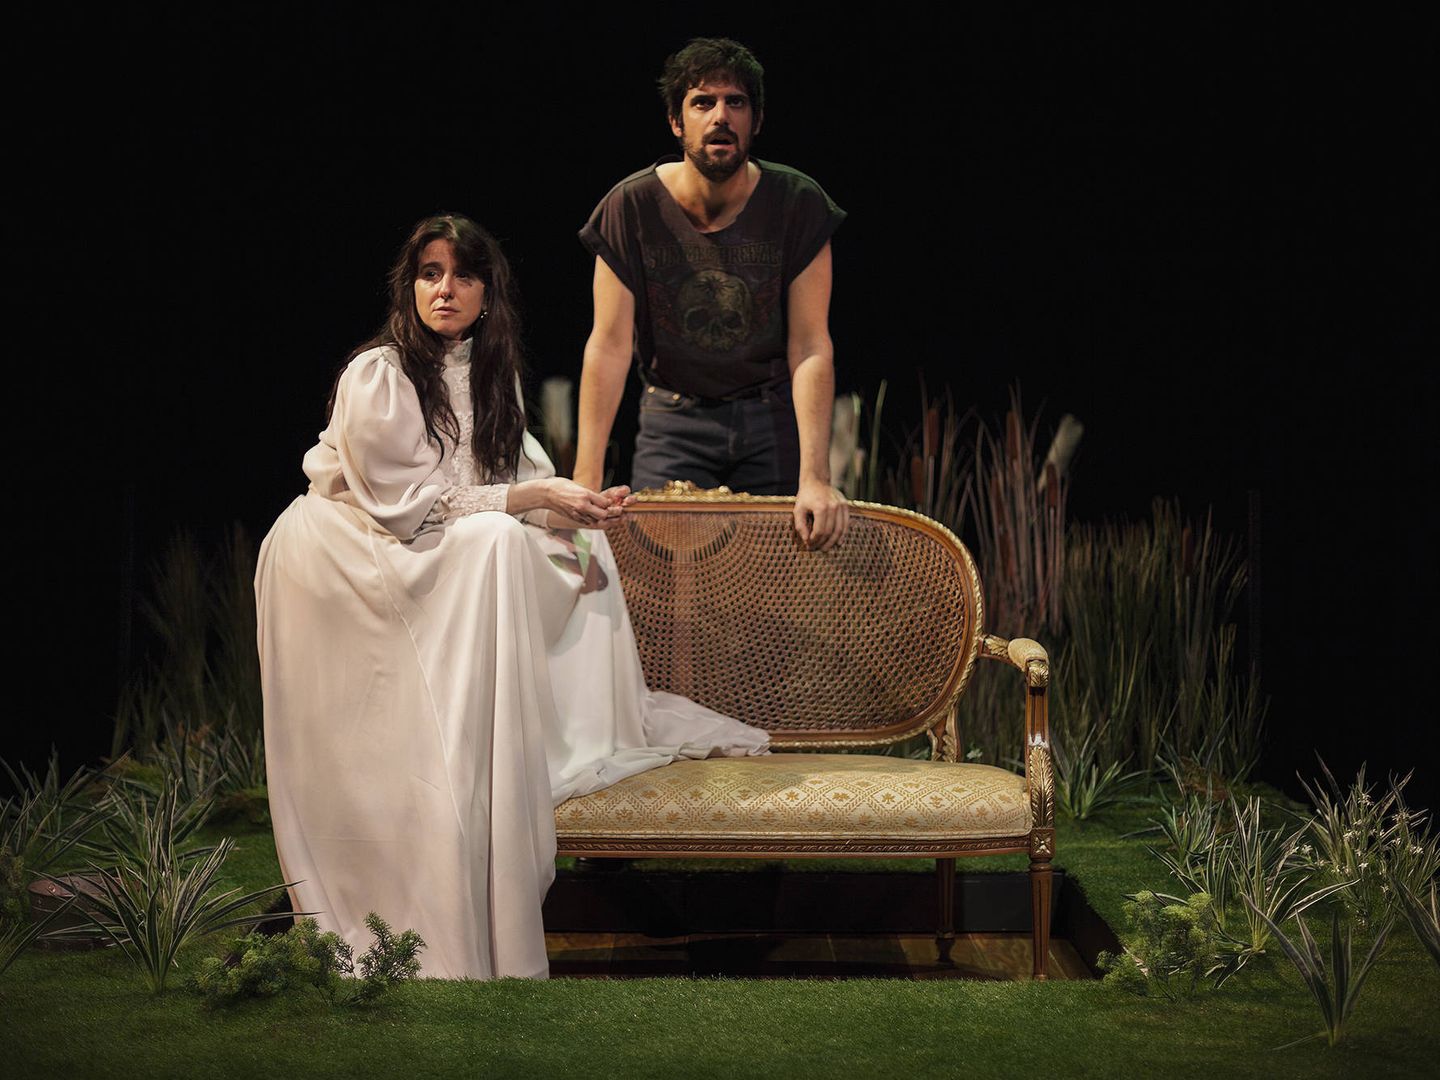 Fernanda Orazi (Rosita) y Francesco Carril (novio), en 'Doña Rosita anotada', dirigida por Pablo Remón, 2019. (Vanessa Rábade)